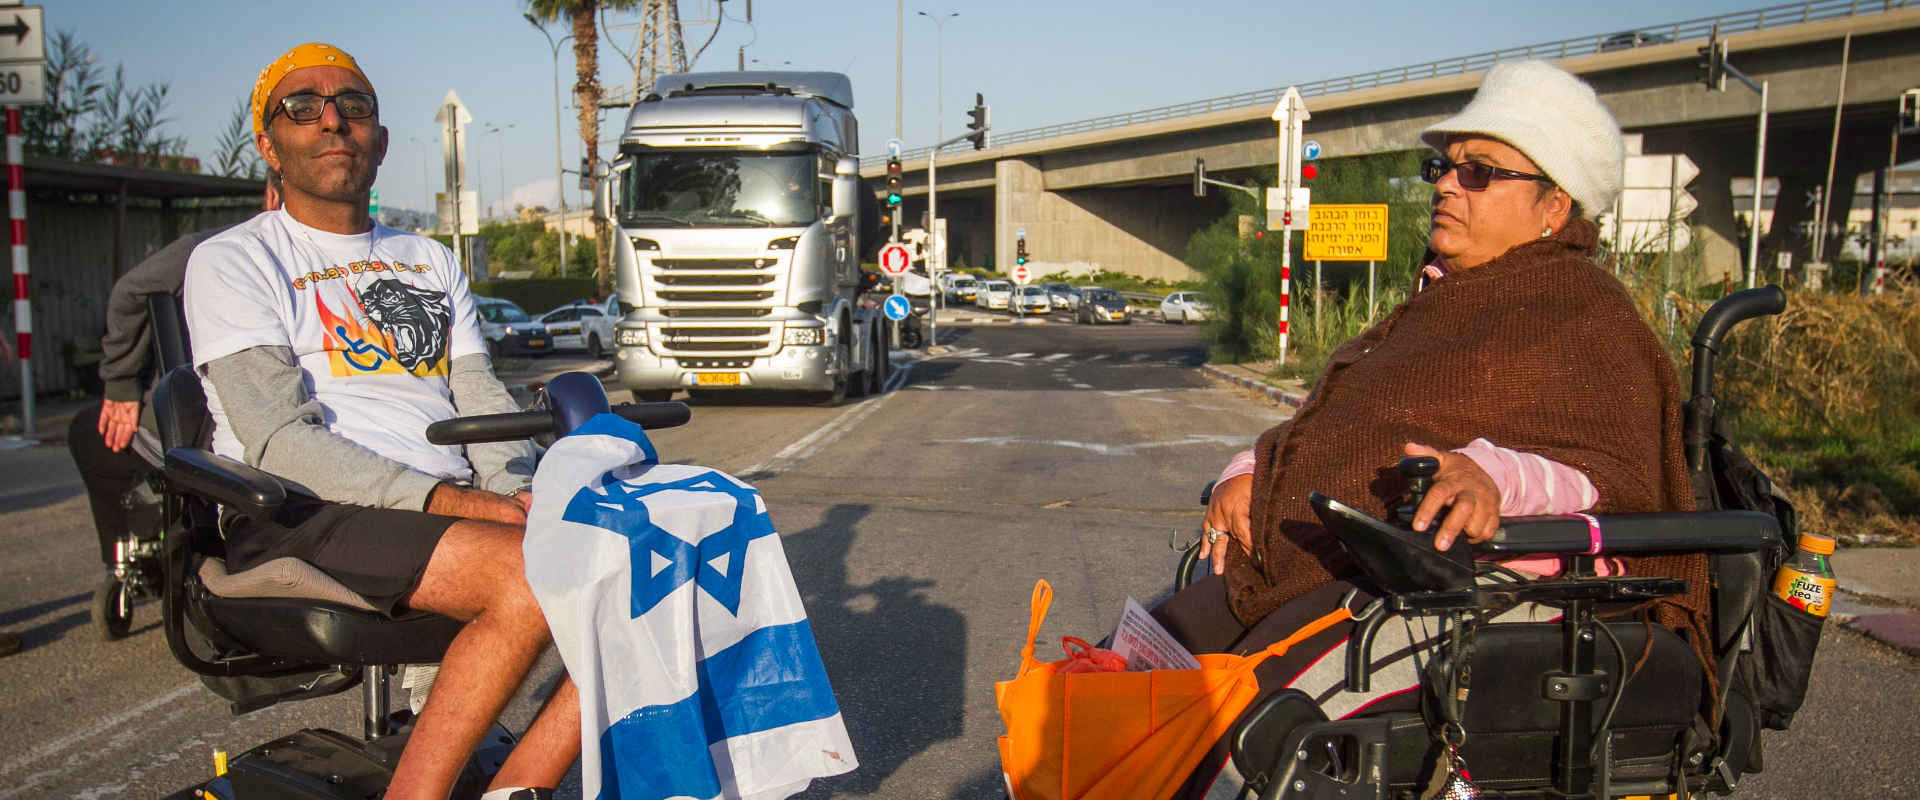 מפגינים נכים חוסמים כביש בחיפה, בחודש שעבר